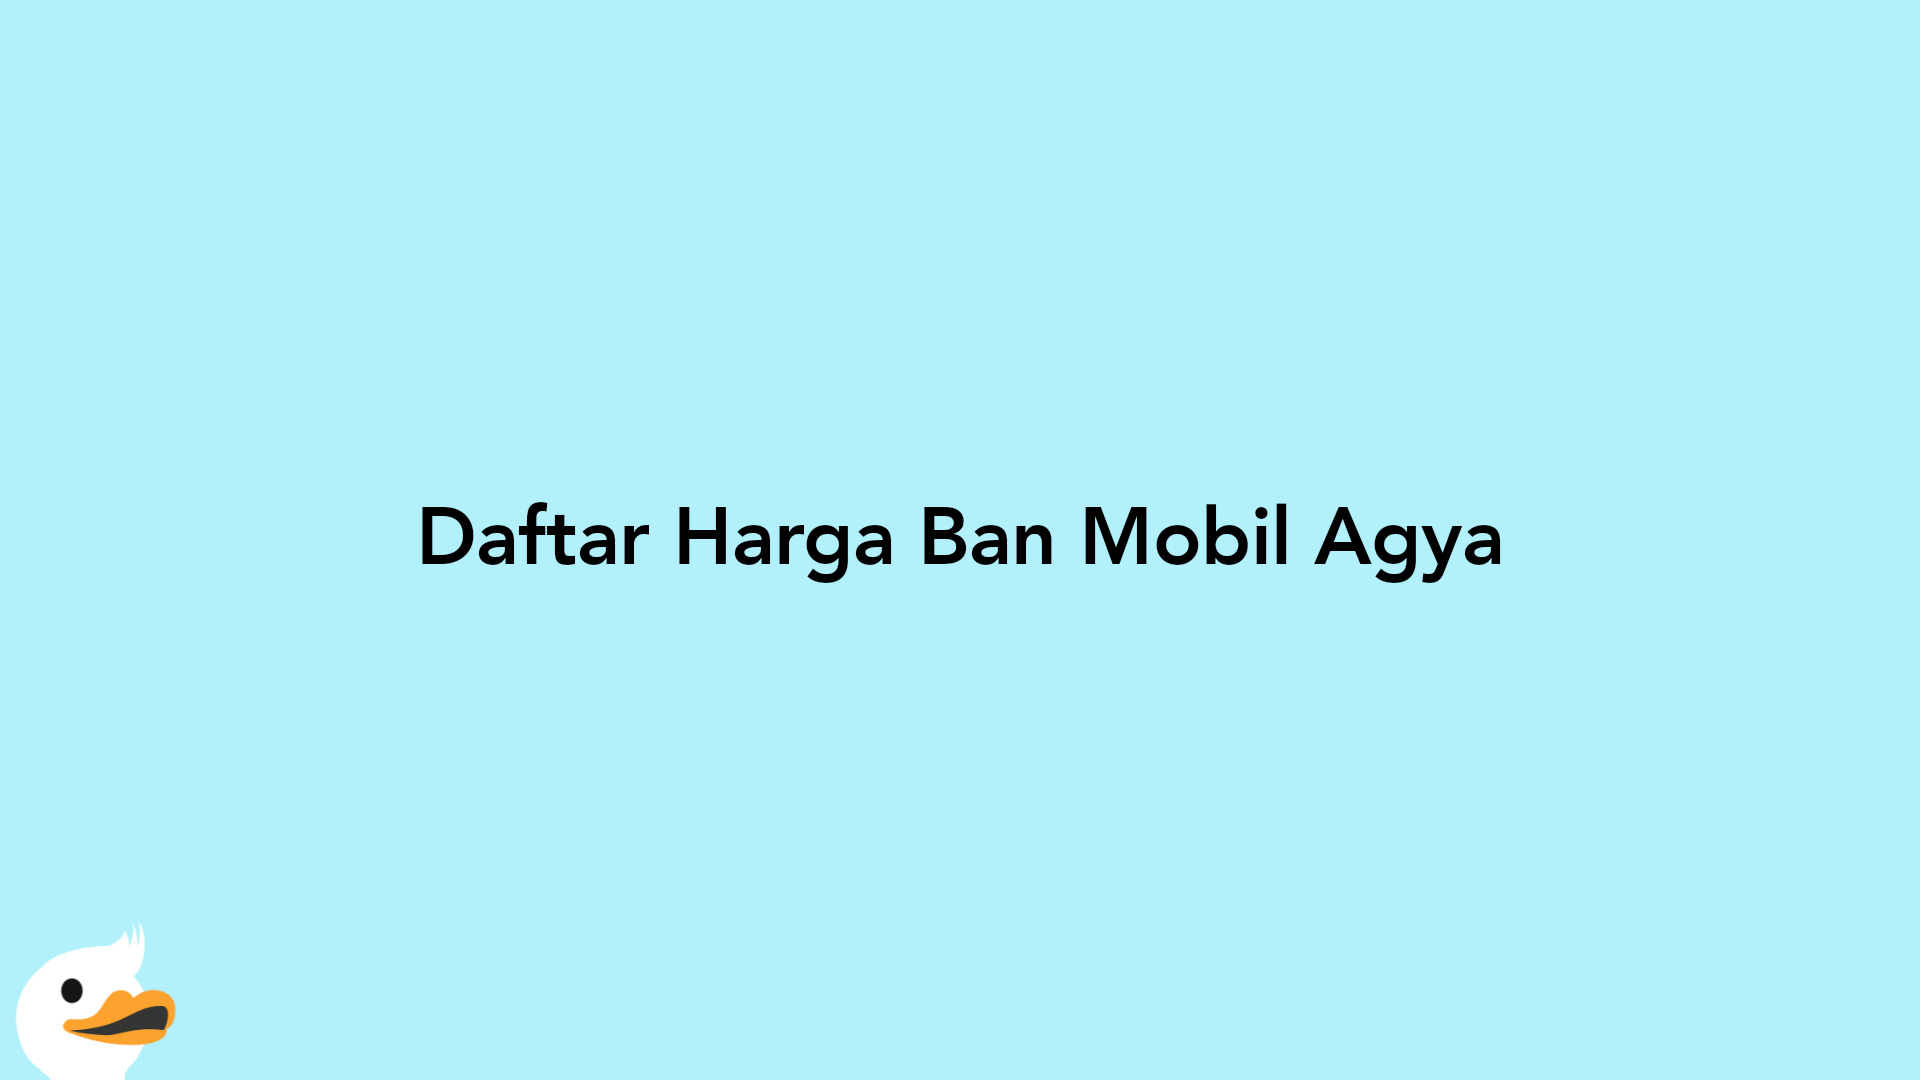 Daftar Harga Ban Mobil Agya